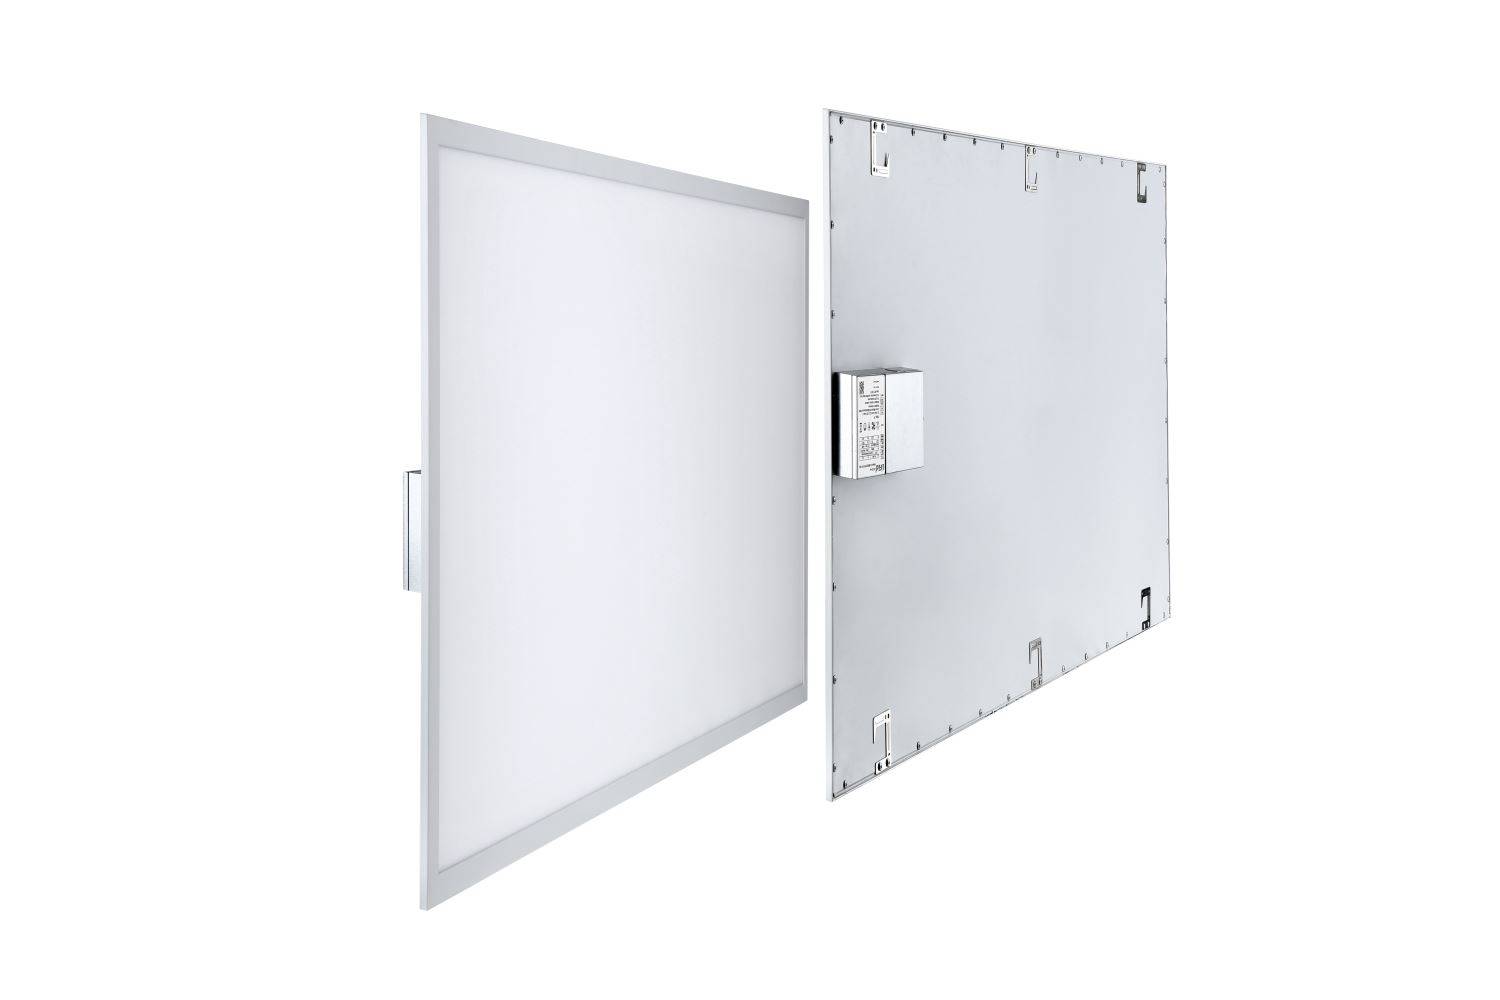 LED panel 2x4 edge-lit panel UL FCC led flat panel lamp dimmable 4000k-6000k 5